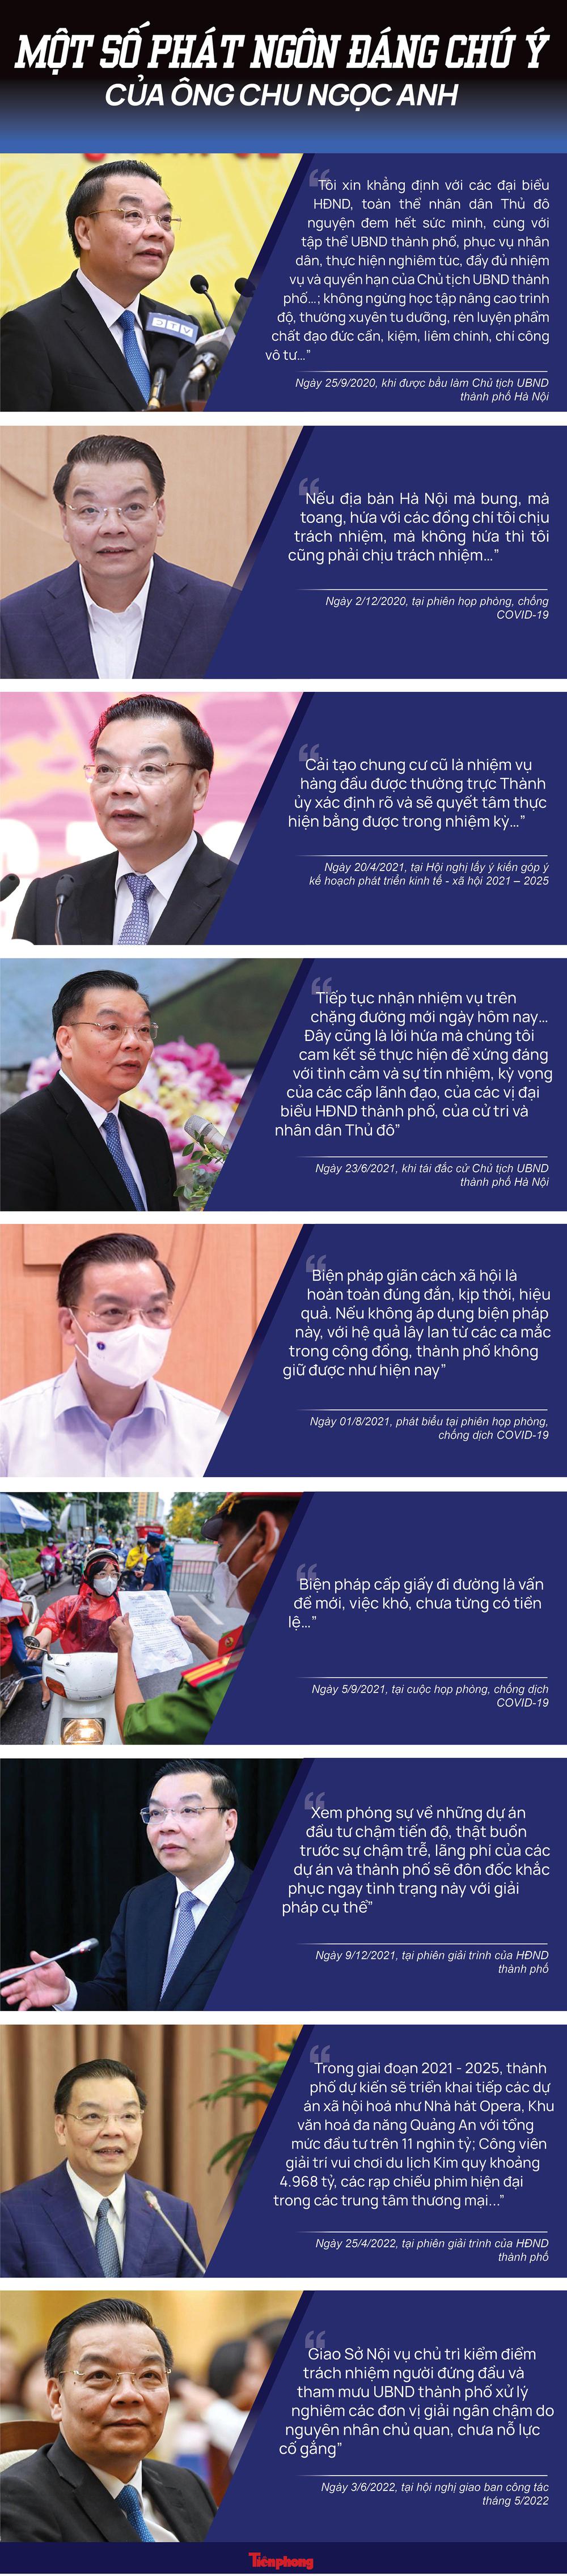 Những phát ngôn đáng chú ý của ông Chu Ngọc Anh trong gần 2 năm ngồi ghế Chủ tịch Hà Nội - Ảnh 1.